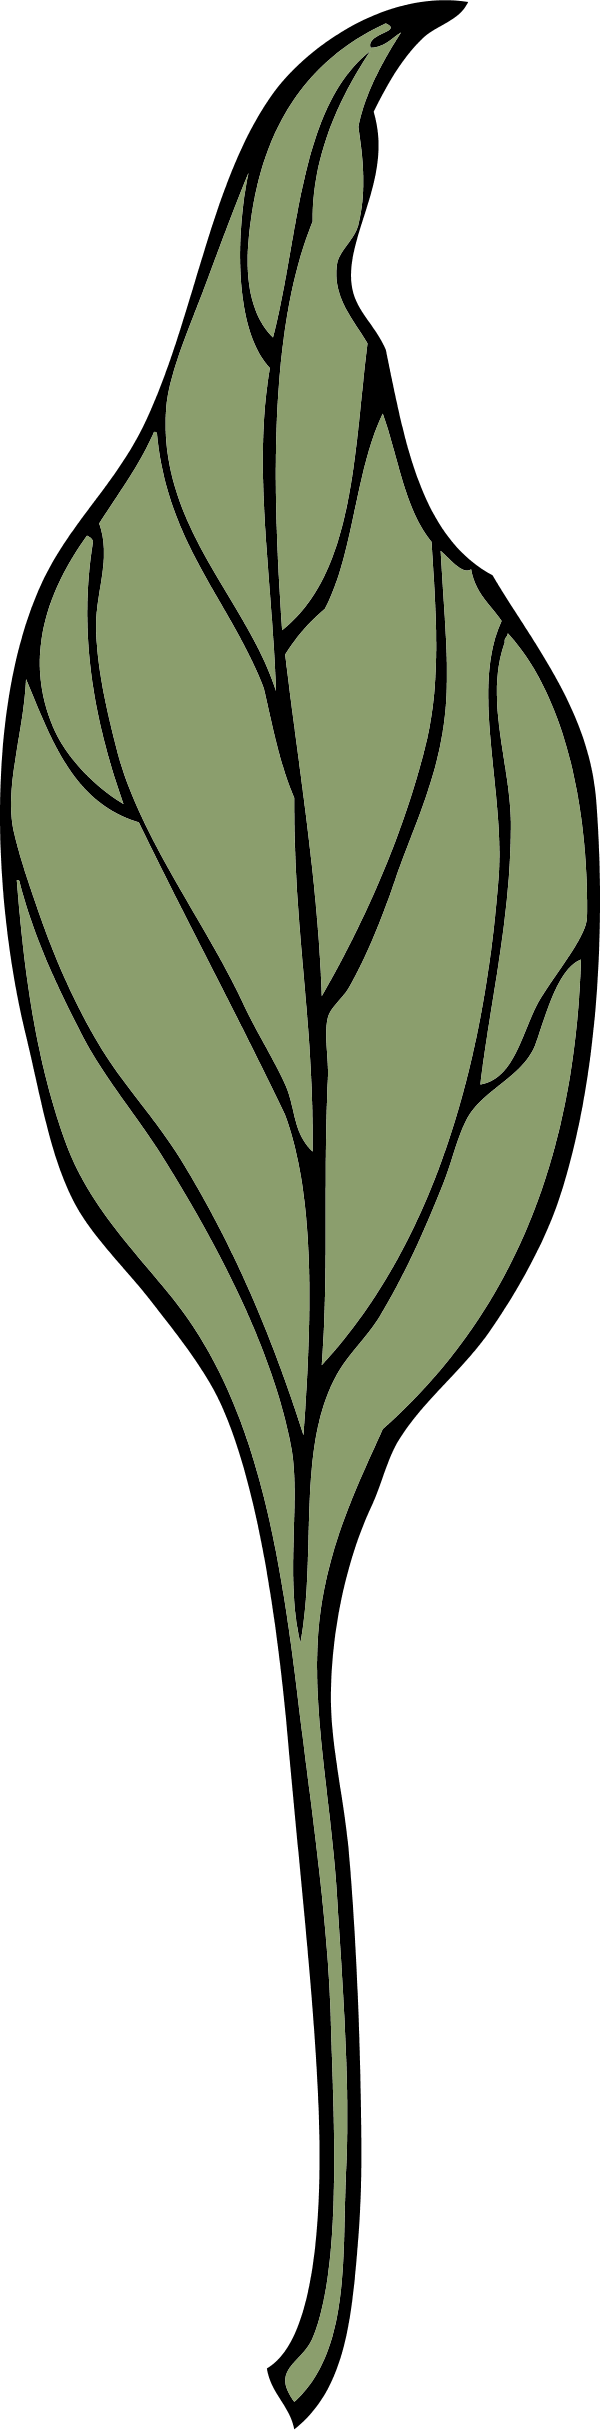 Ivy Leaf - Clip Art (600x2430)